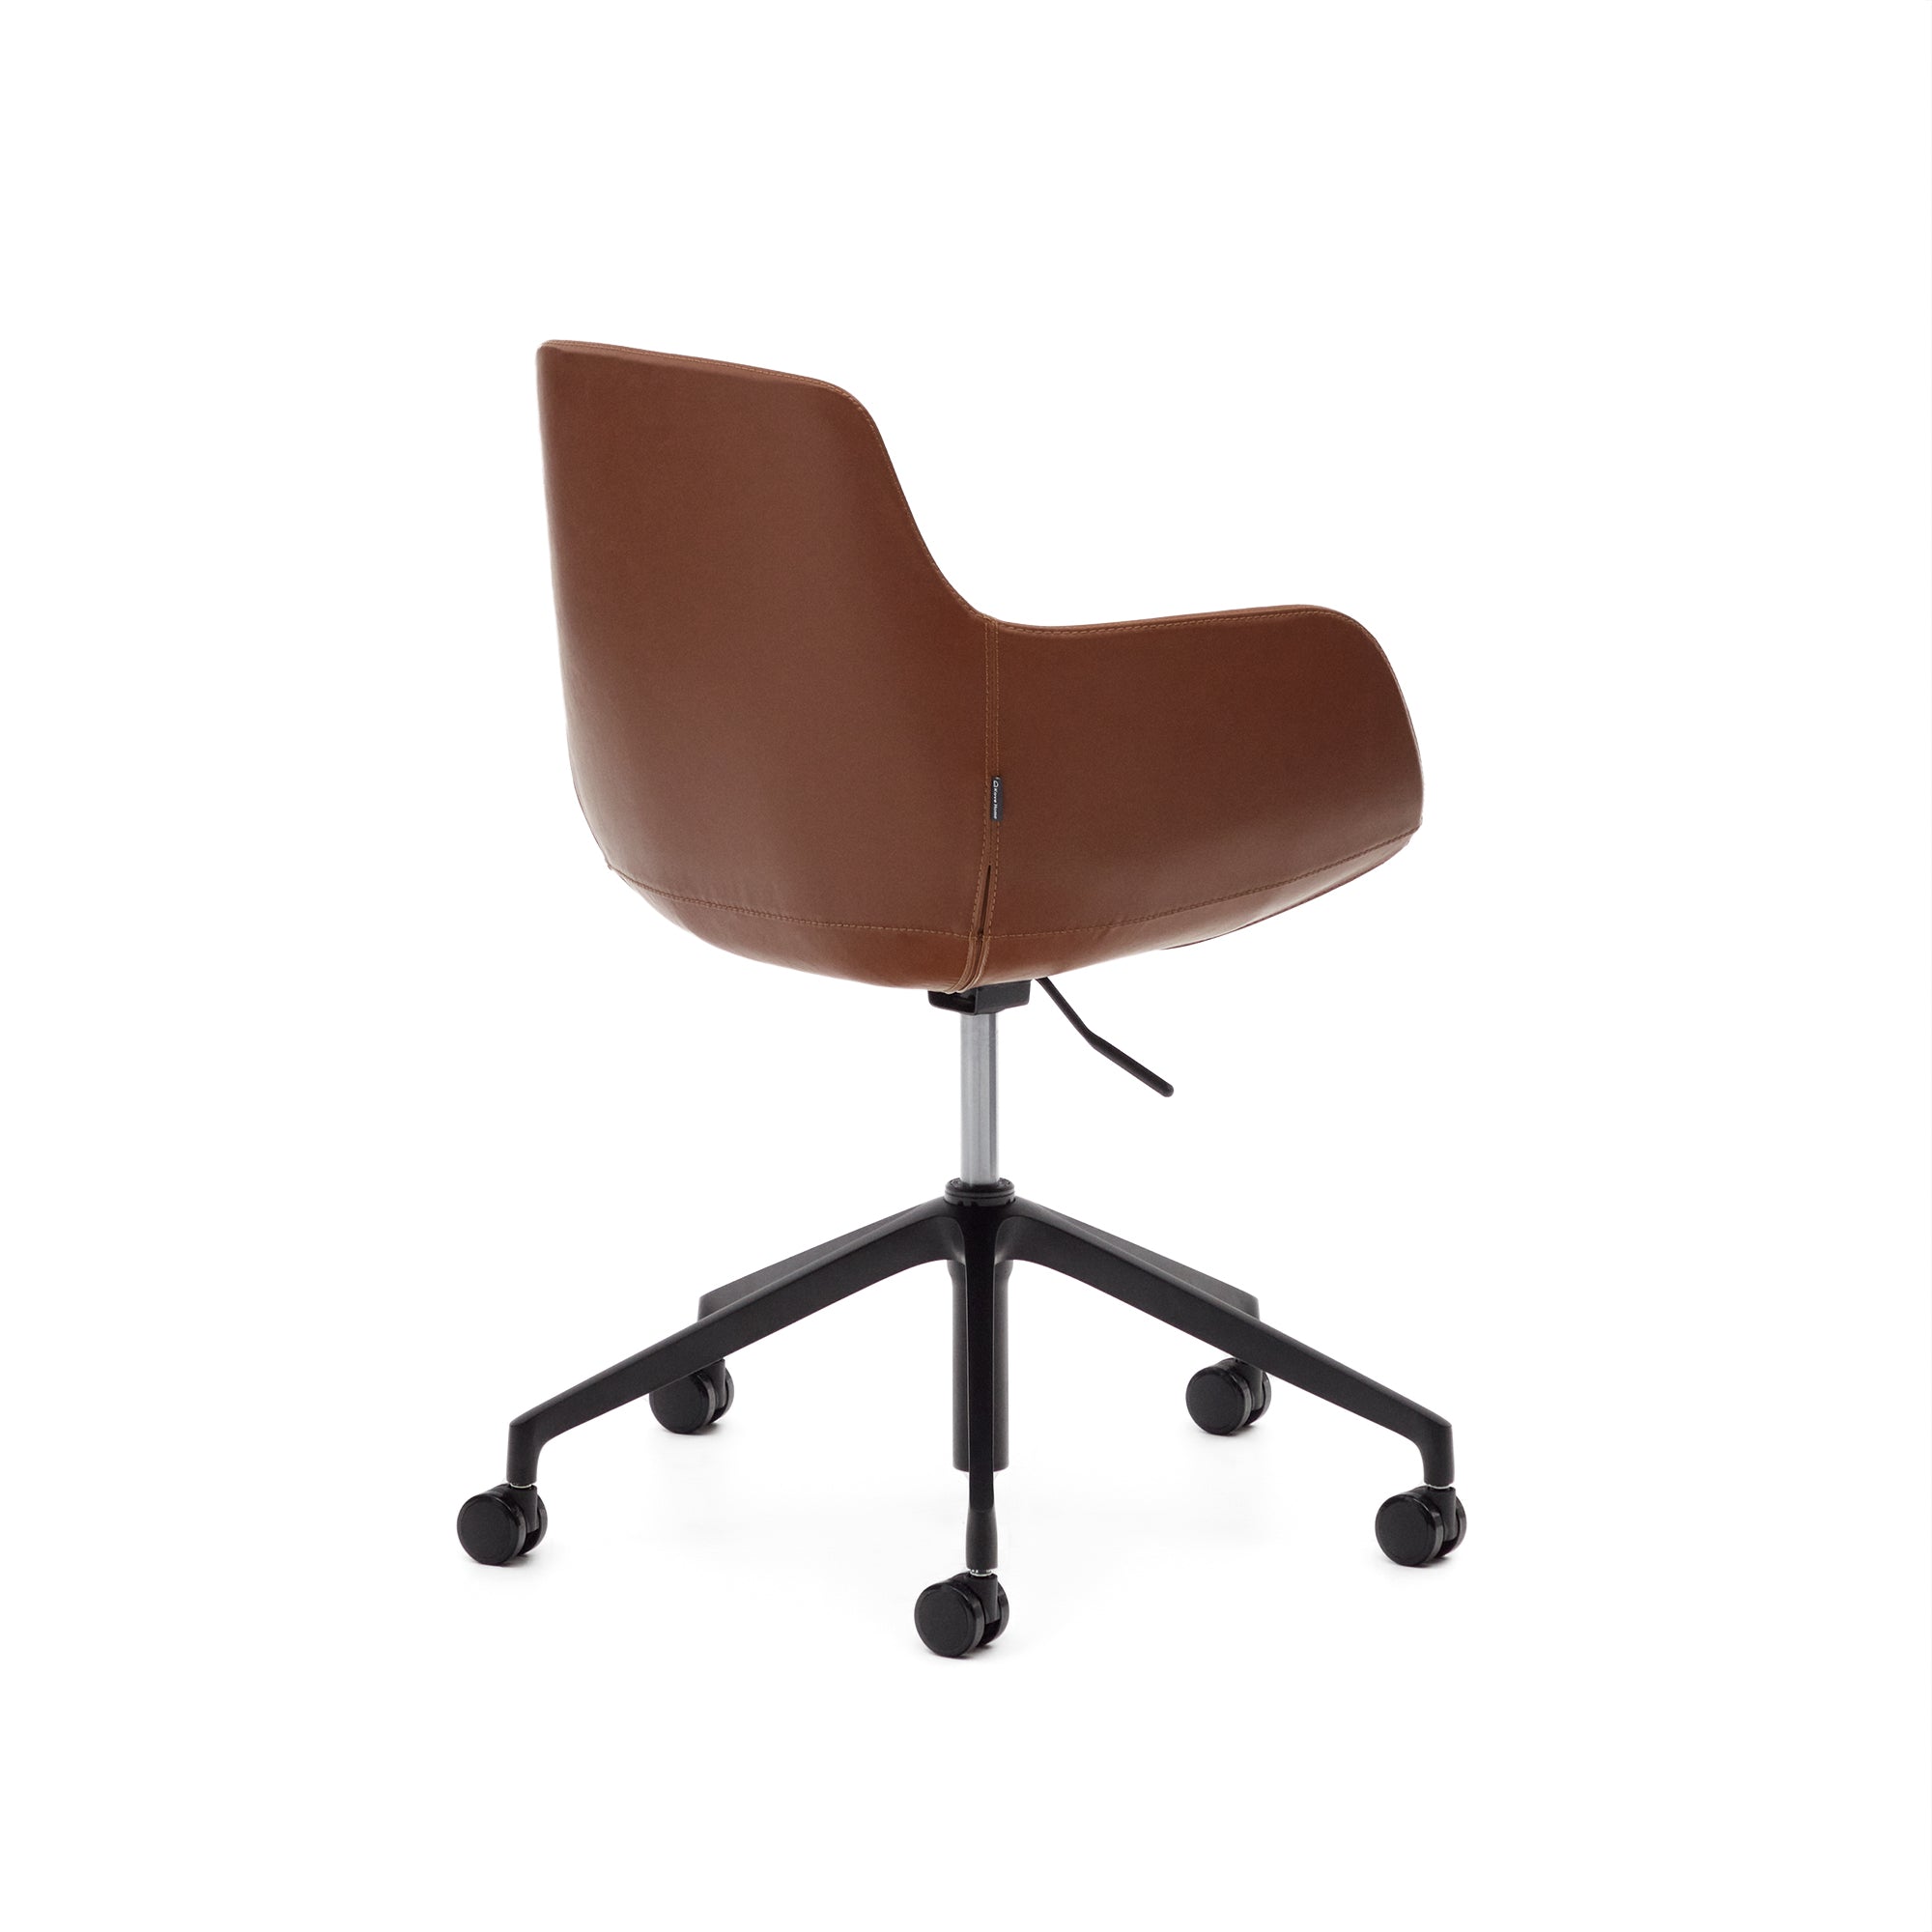 Tissiana irodai szék barna műbőrből és alumíniumból, matt fekete kivitelben